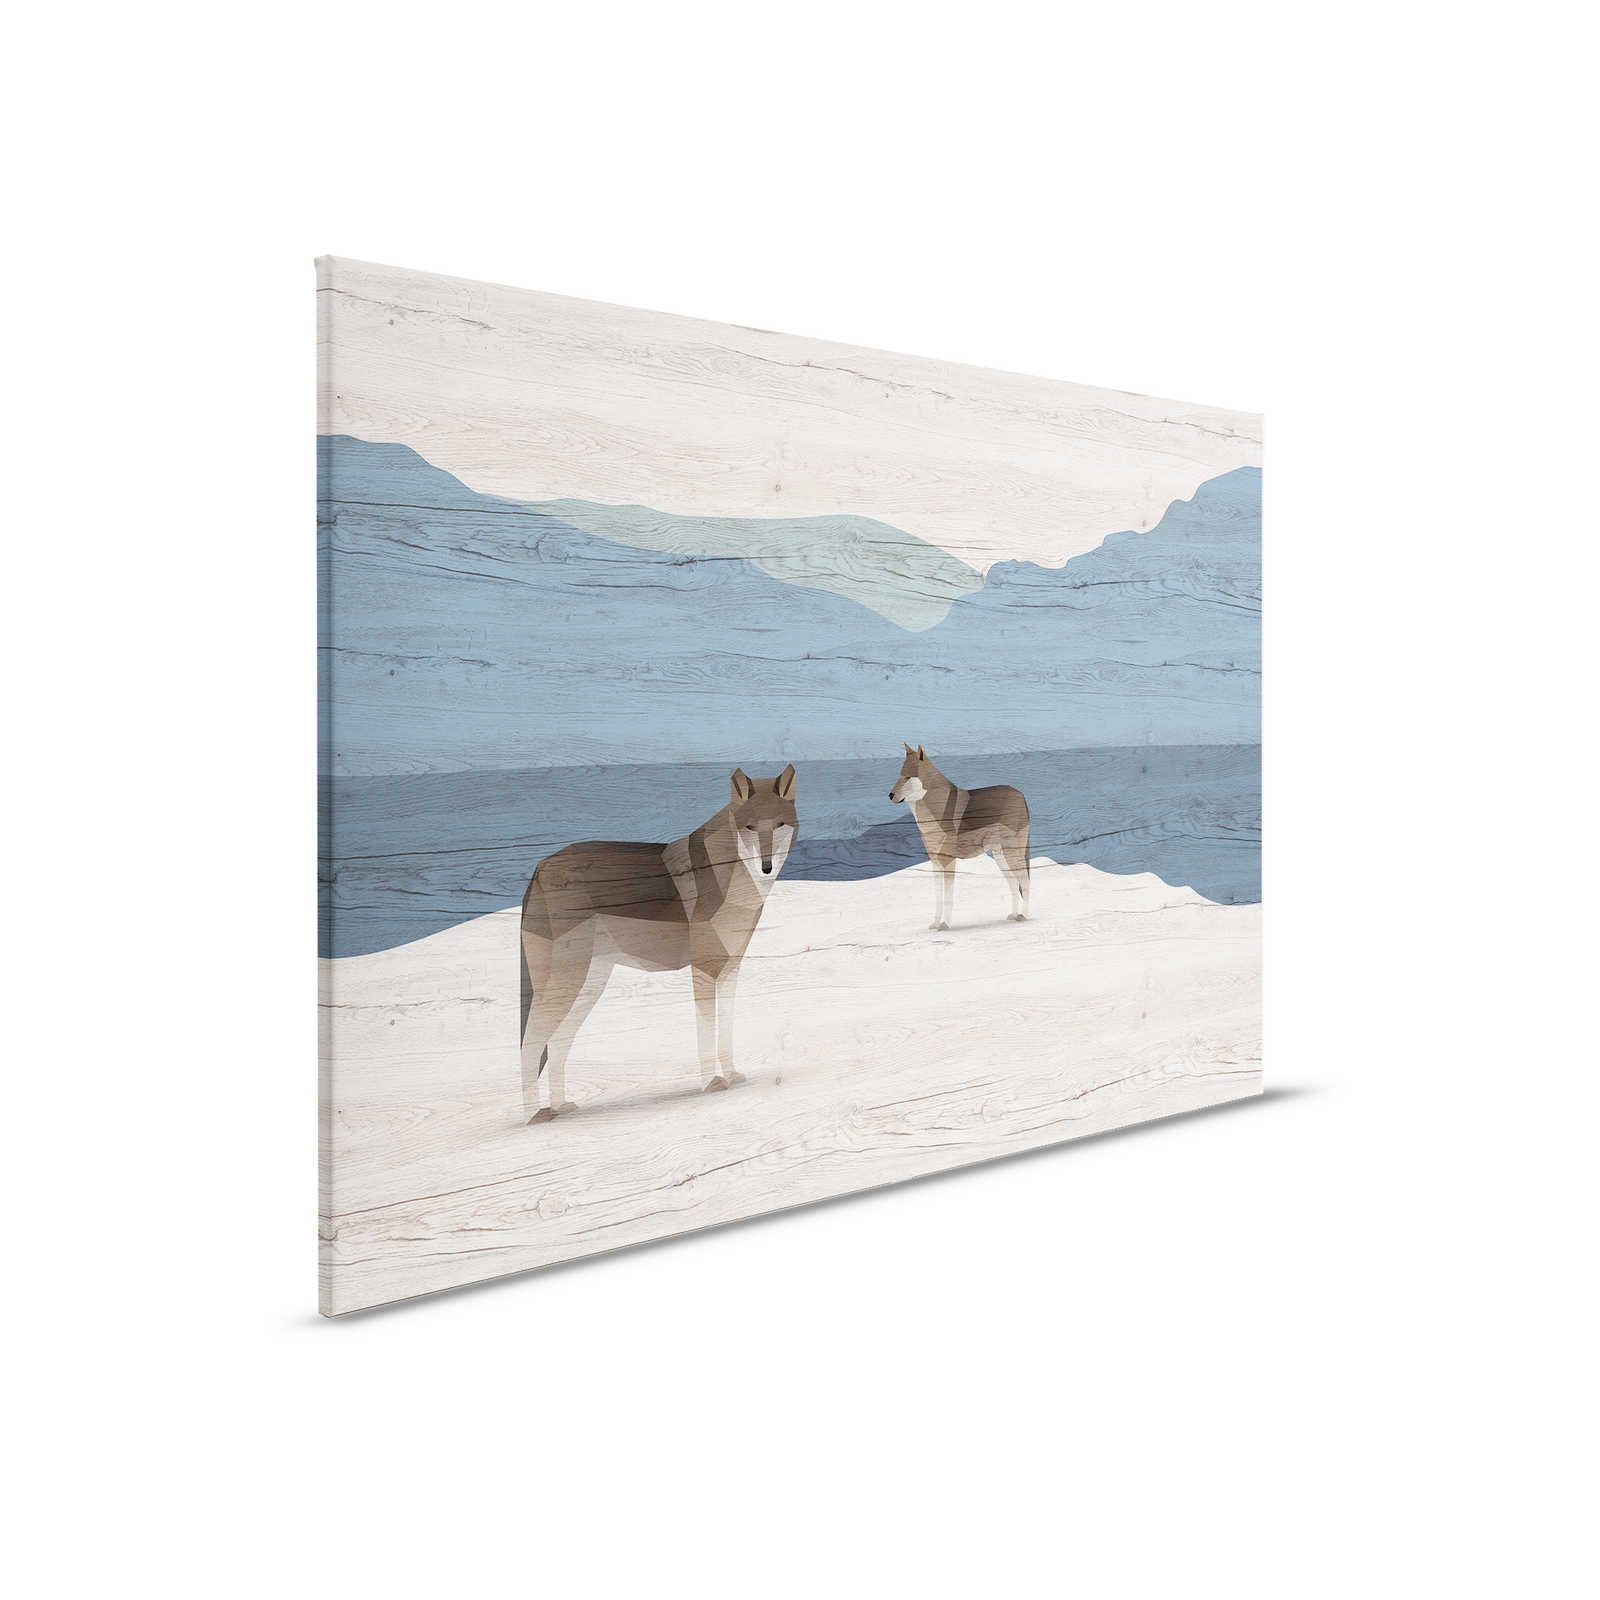 Yukon 1 - Pintura en lienzo Montañas y perros con textura de madera - 0,90 m x 0,60 m
